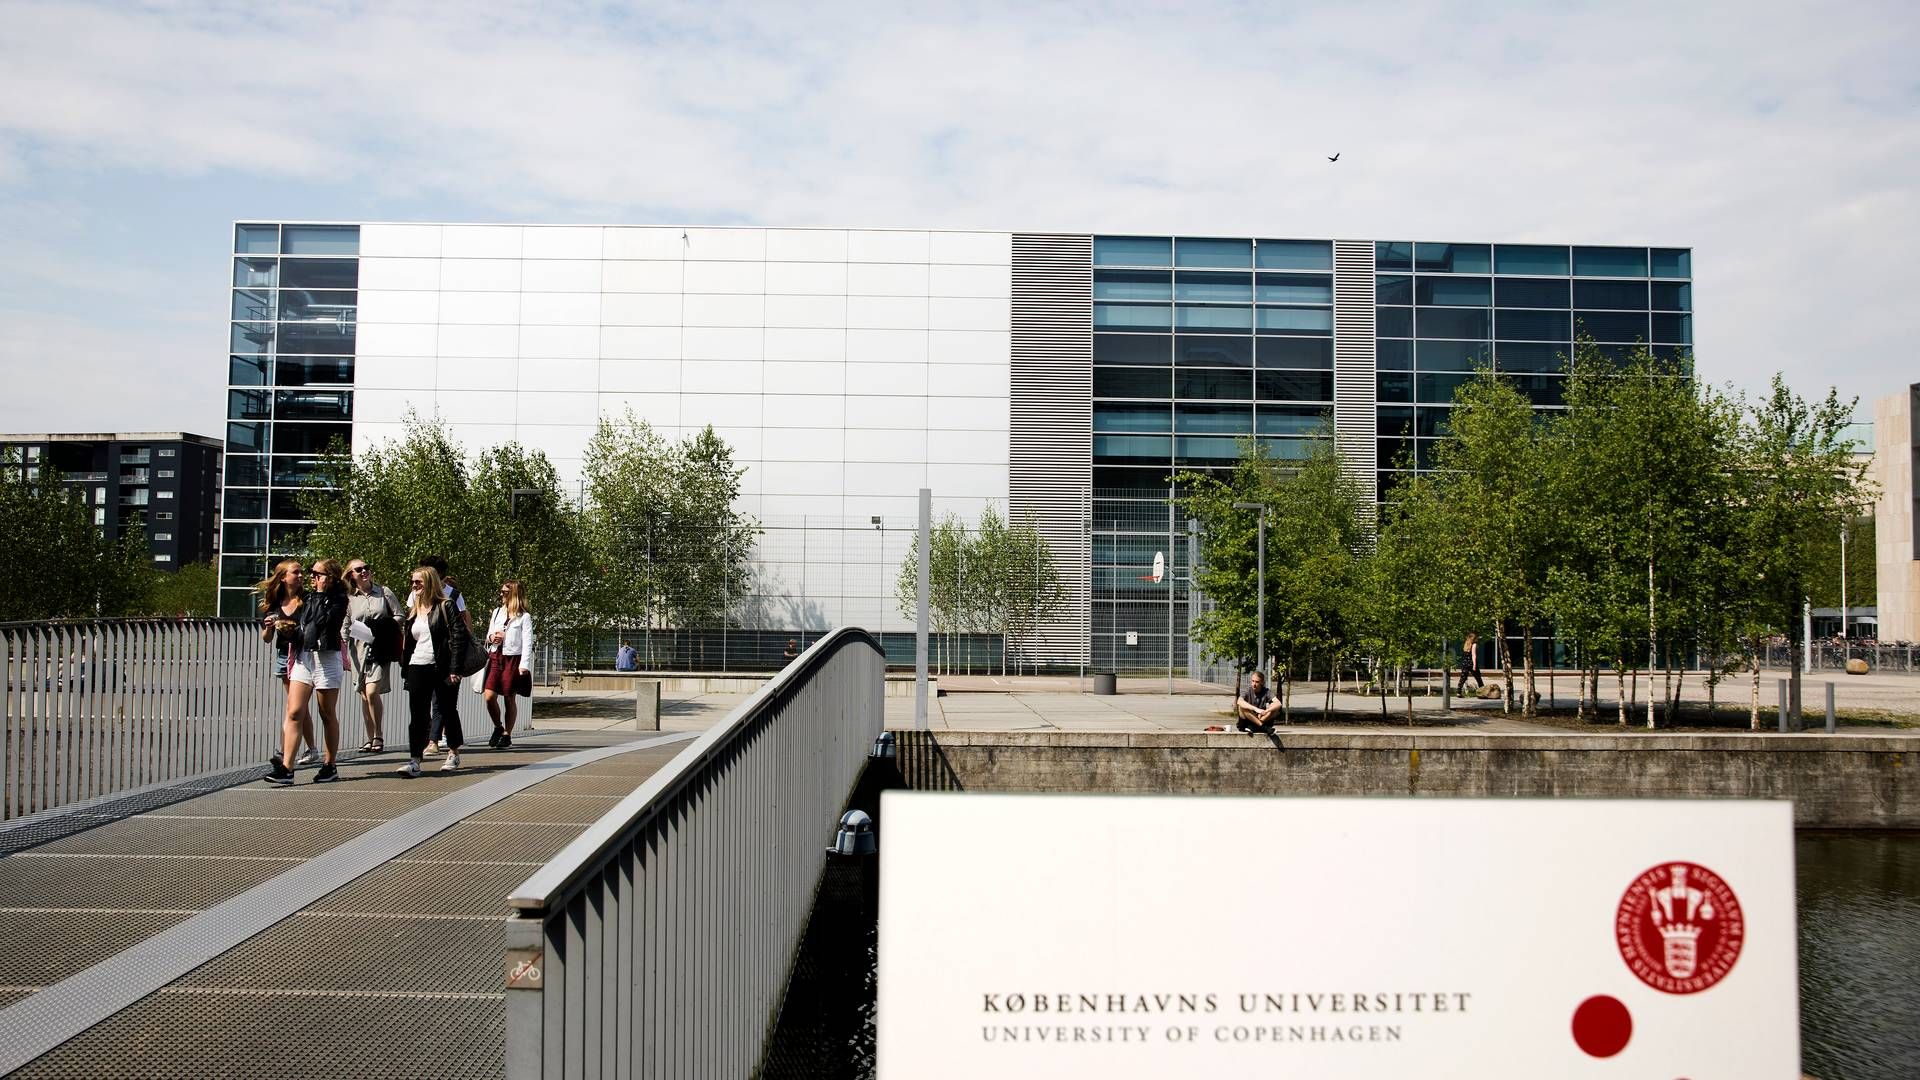 Ændringerne fører til fratrædelser, fortæller Christian Hedegaard, k-rådgiver på Københavns Universitet. | Foto: Finn Frandsen/Politiken/Ritzau Scanpix